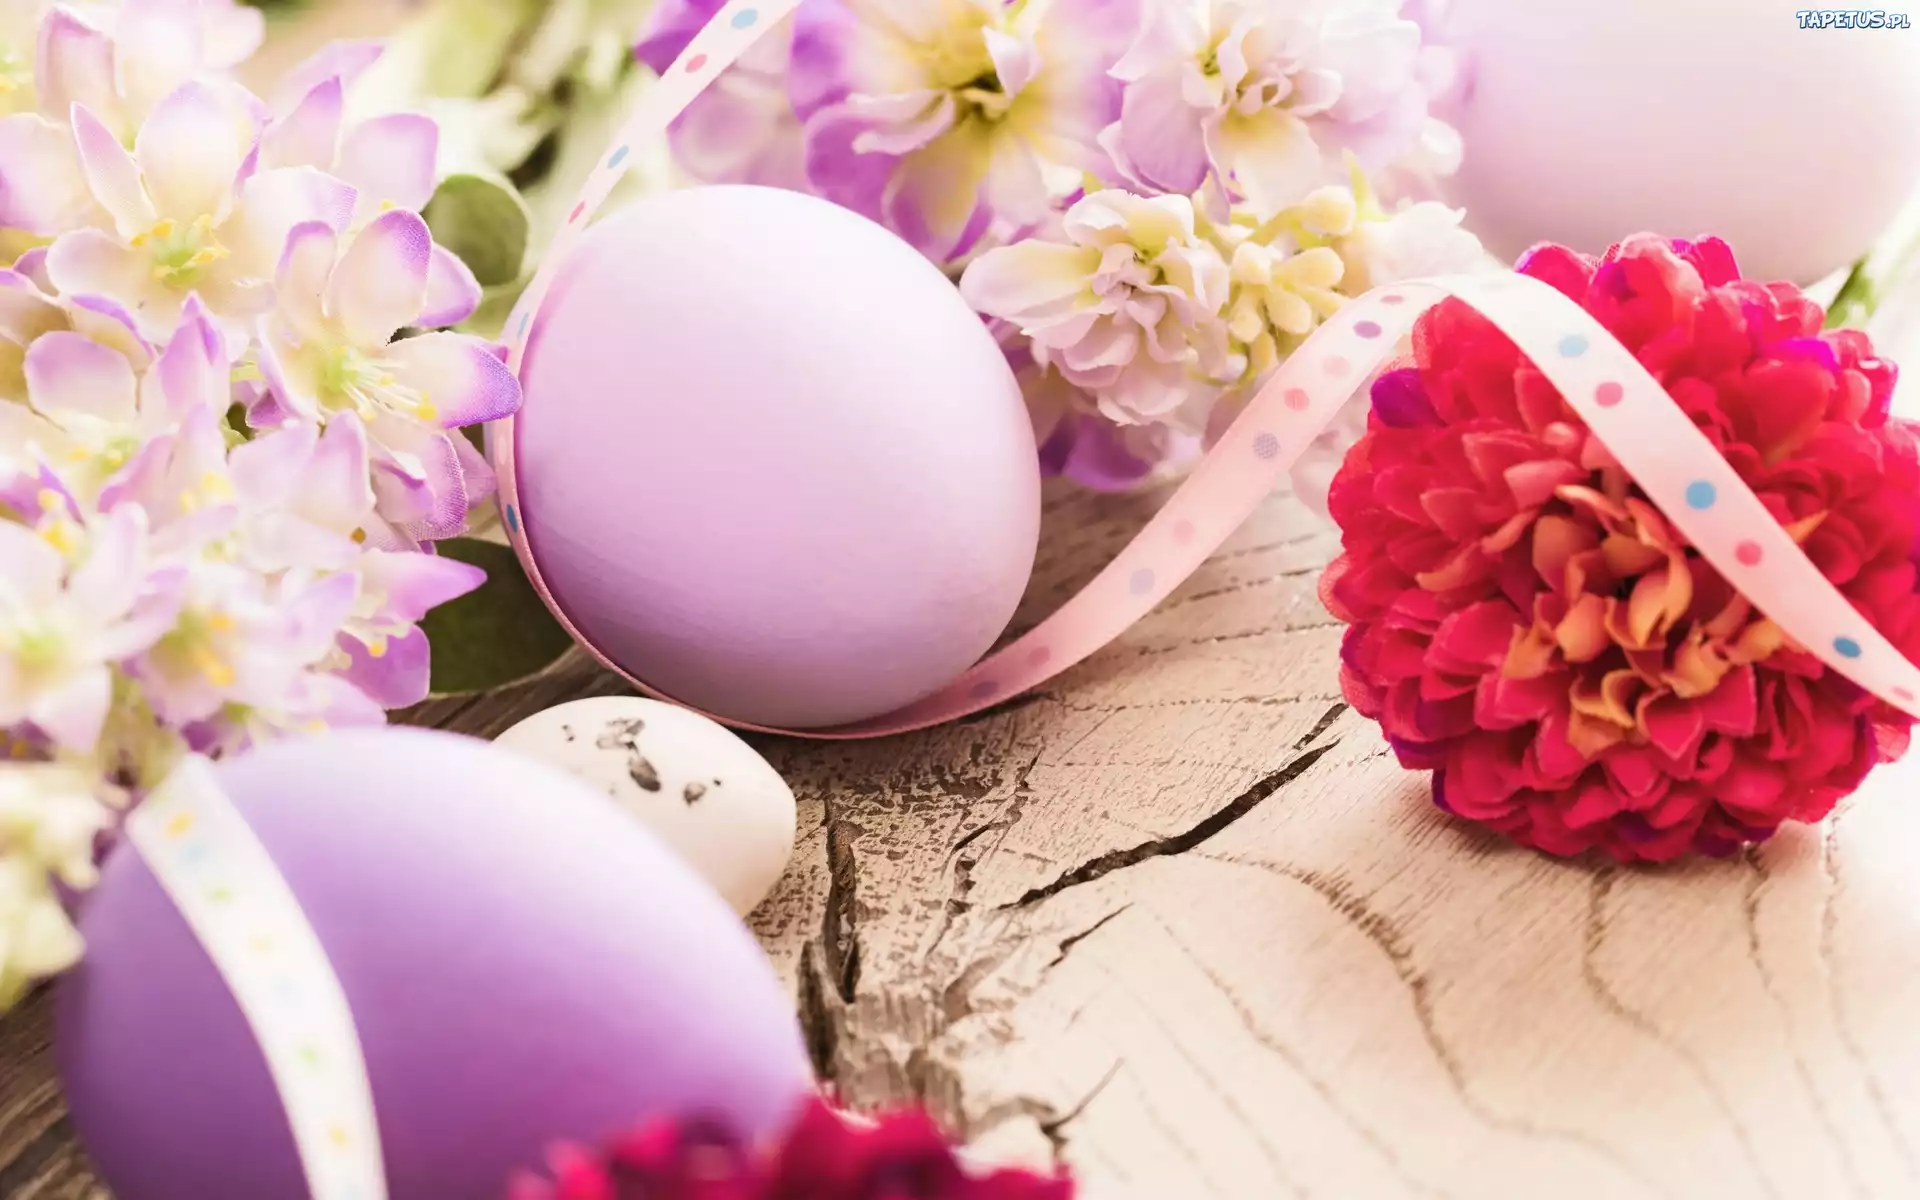 Wielkanoc, Jajka, Pisanki, Kwiaty